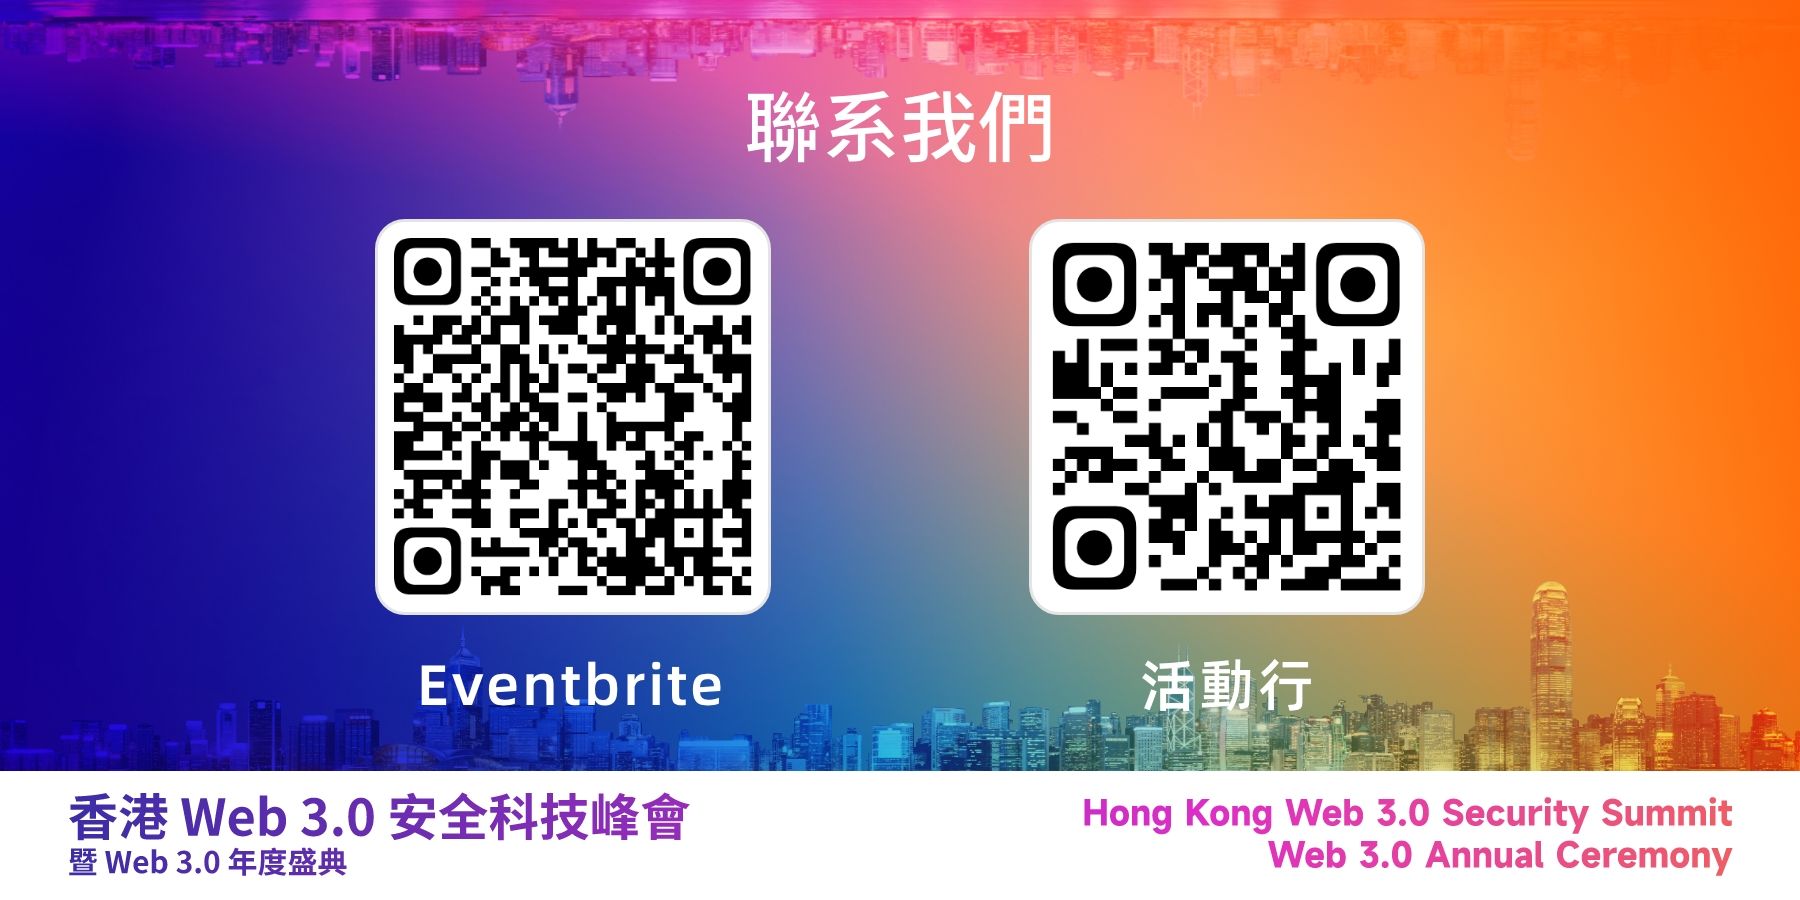 财政司司长陈茂波、数码港主席陈细明确认出席香港首届「 Web 3.0 安全科技峰会 —— 暨 Web 3.0 年度颁奖典